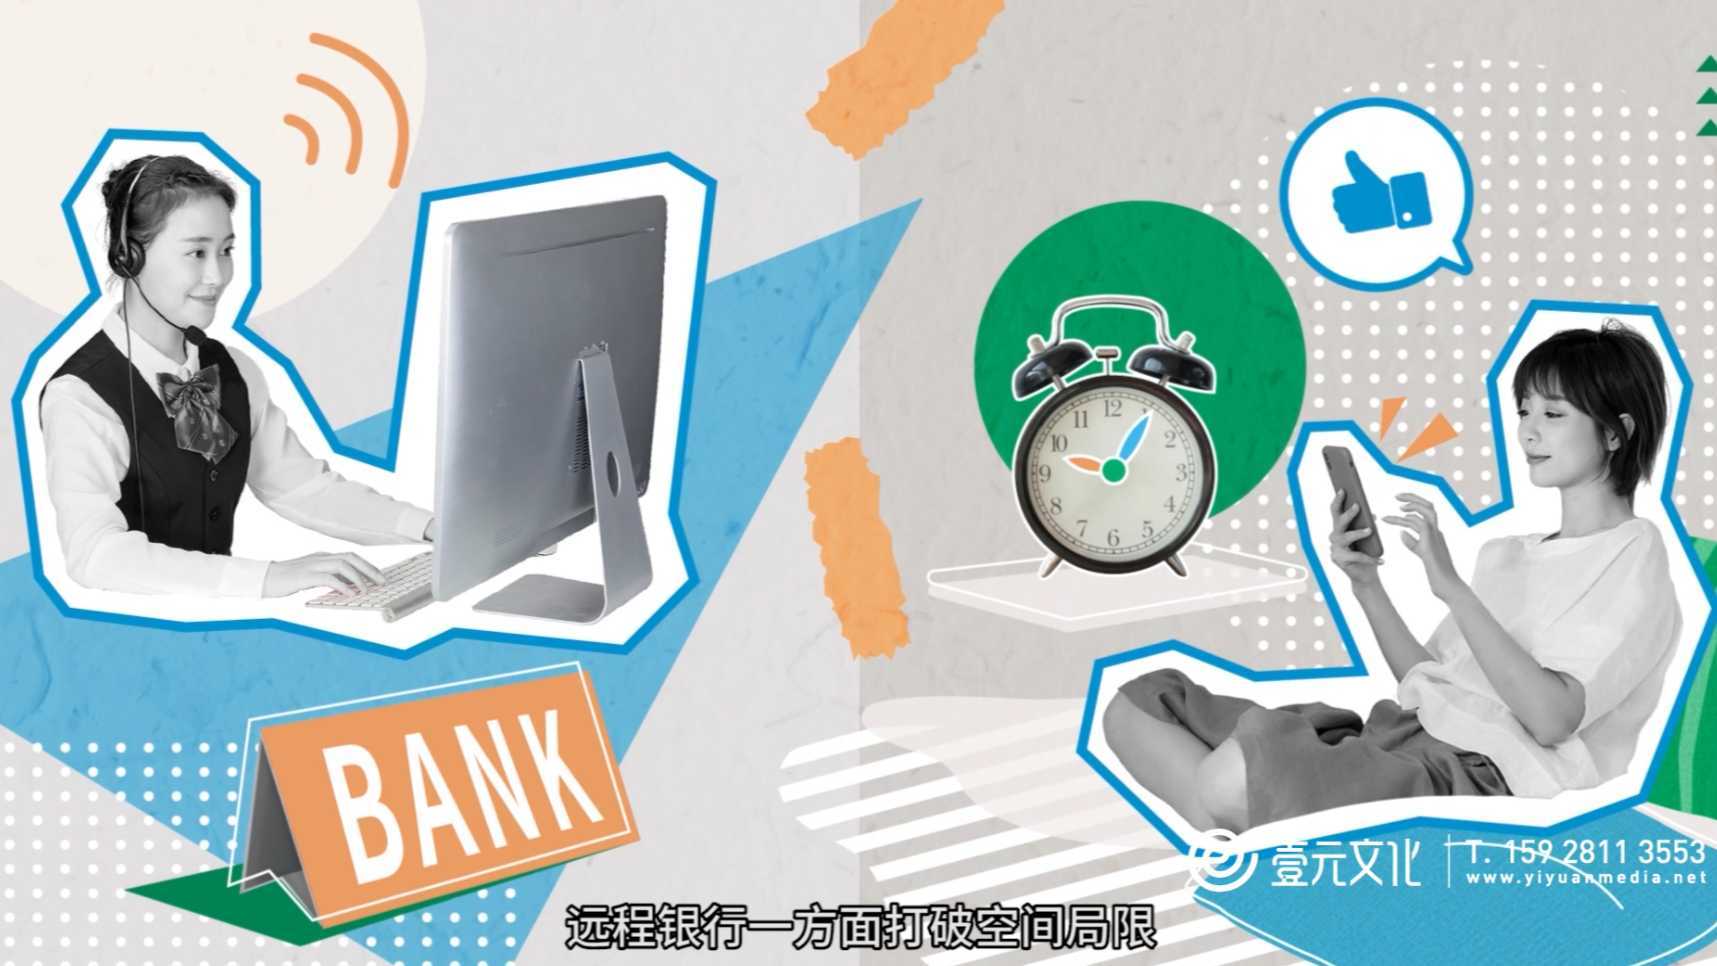 【MG动画】壹元文化X远程银行 全能型线上远程银行动画宣传